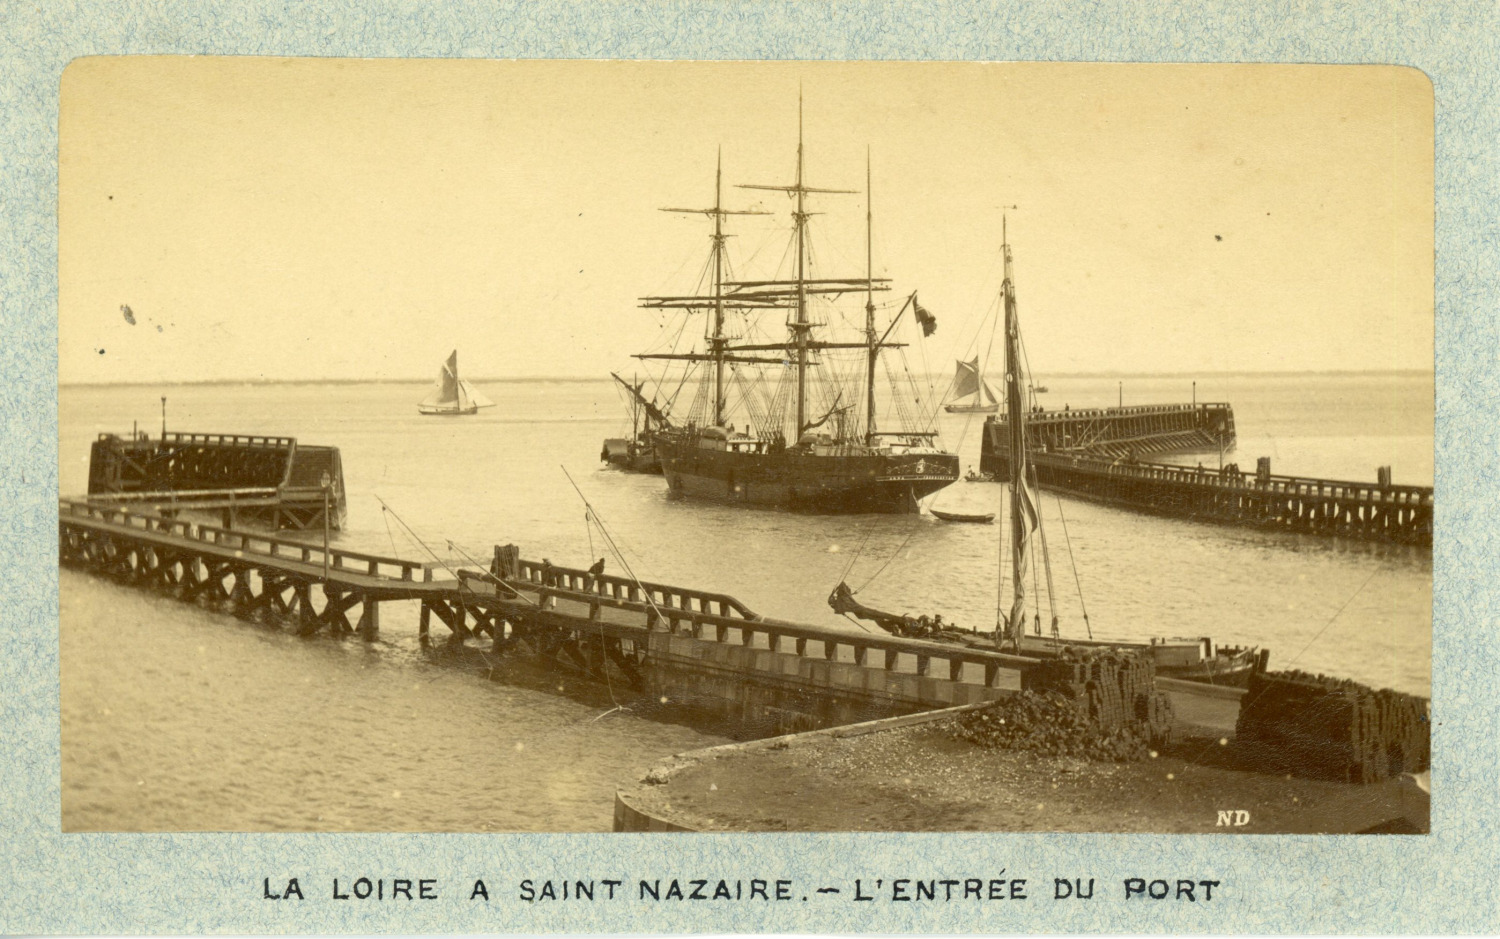 France, La Loire à Saint-Nazaire, the entrance to the port, ca.1870, vintage album